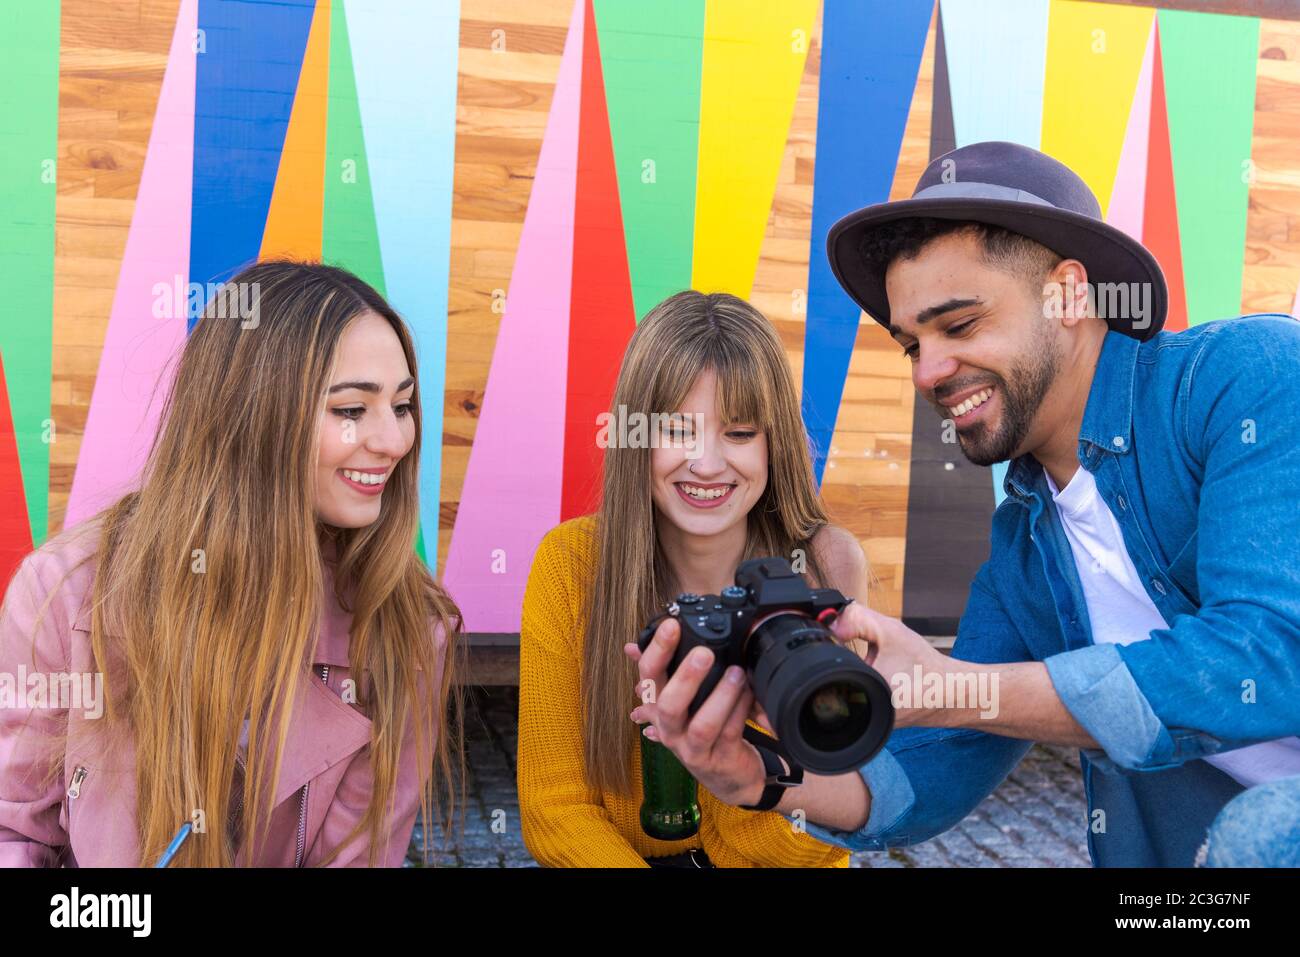 Un photographe sourit alors qu'il lui montre une photo de deux filles souriantes Banque D'Images